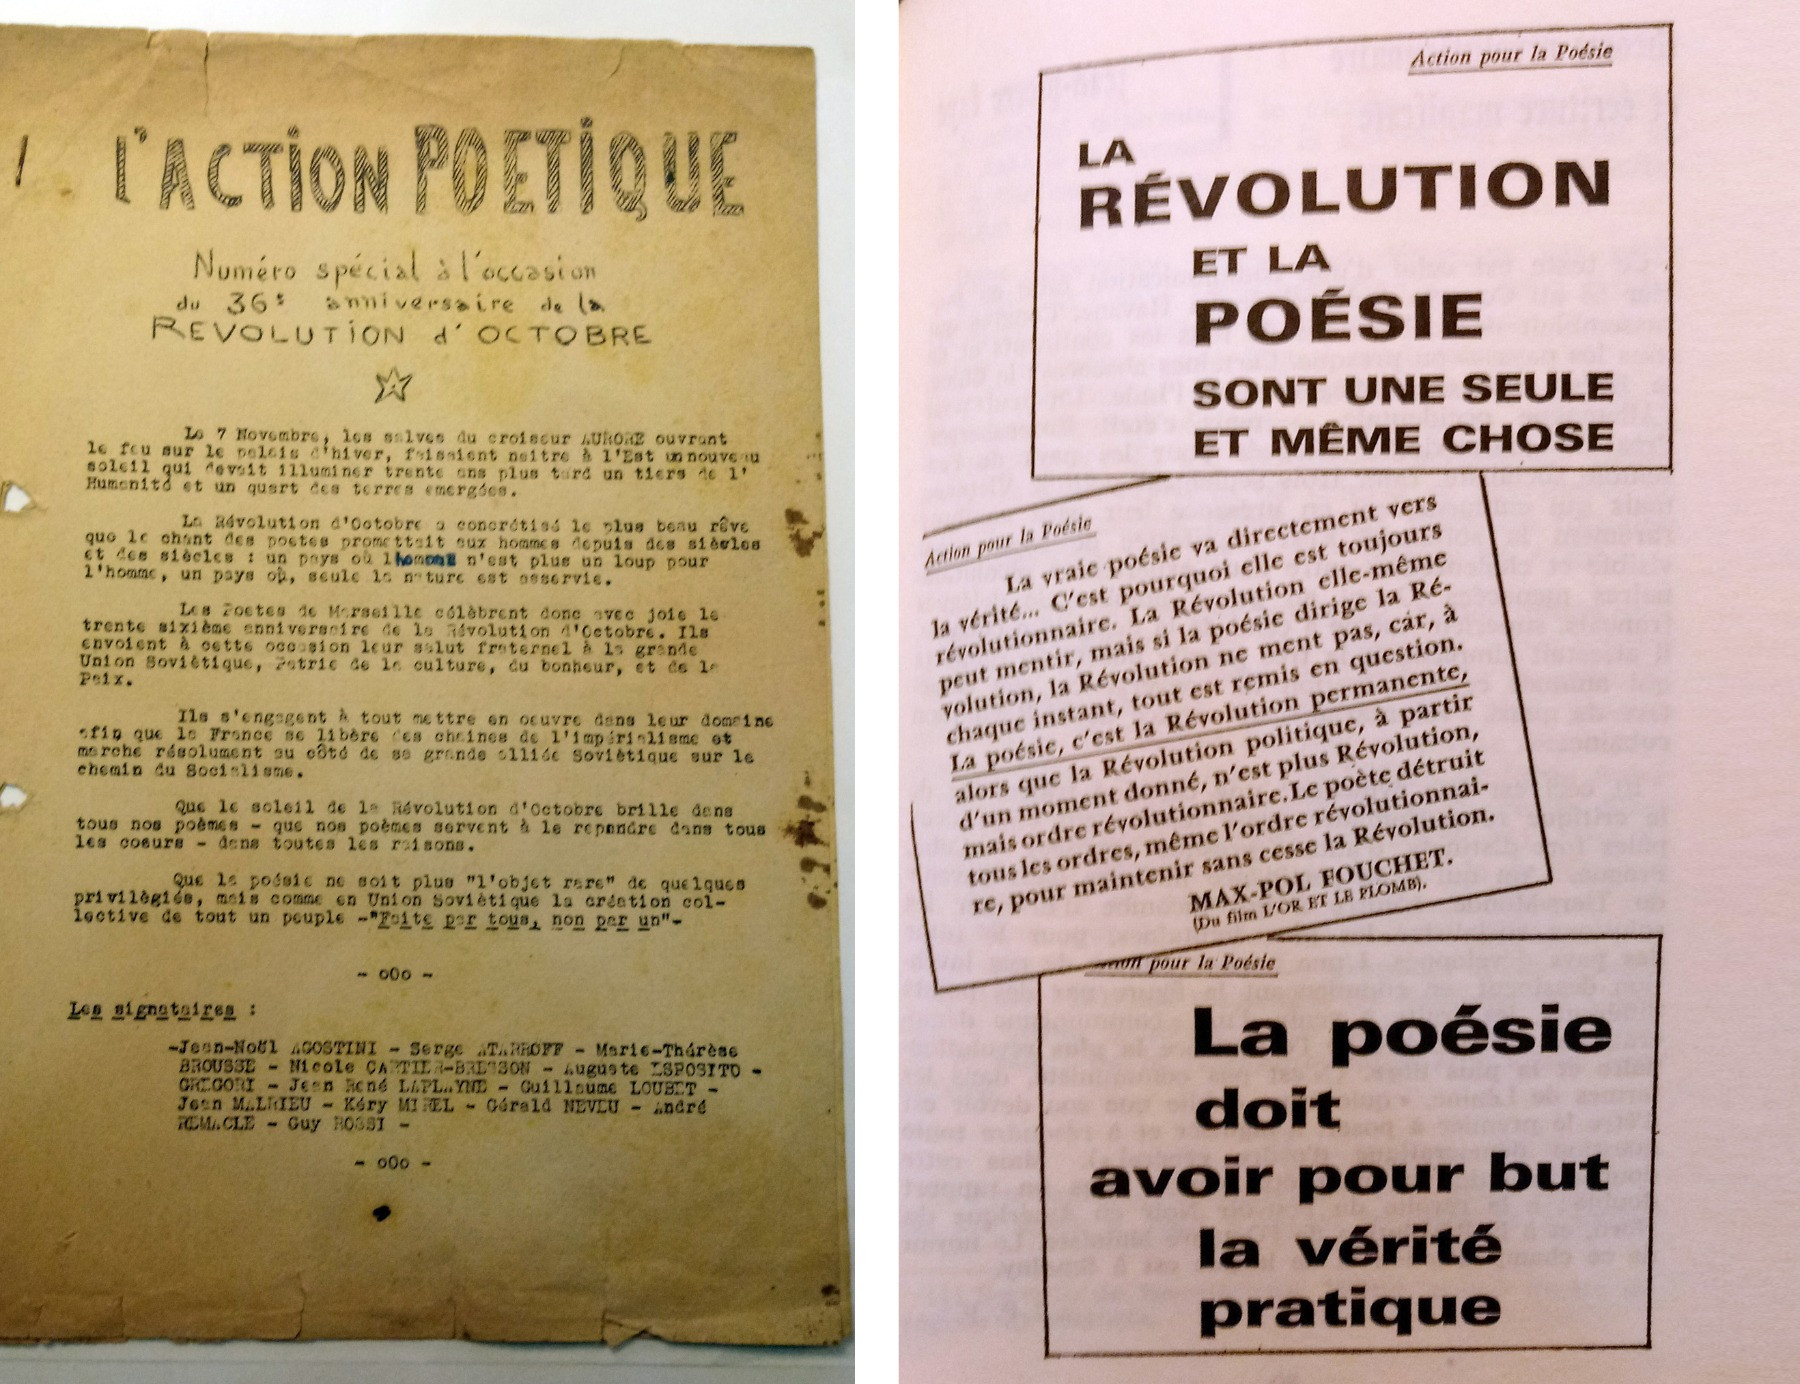 Страницы выпусков Action poétique 1957 и&nbsp;1953&nbsp;годов соответственно